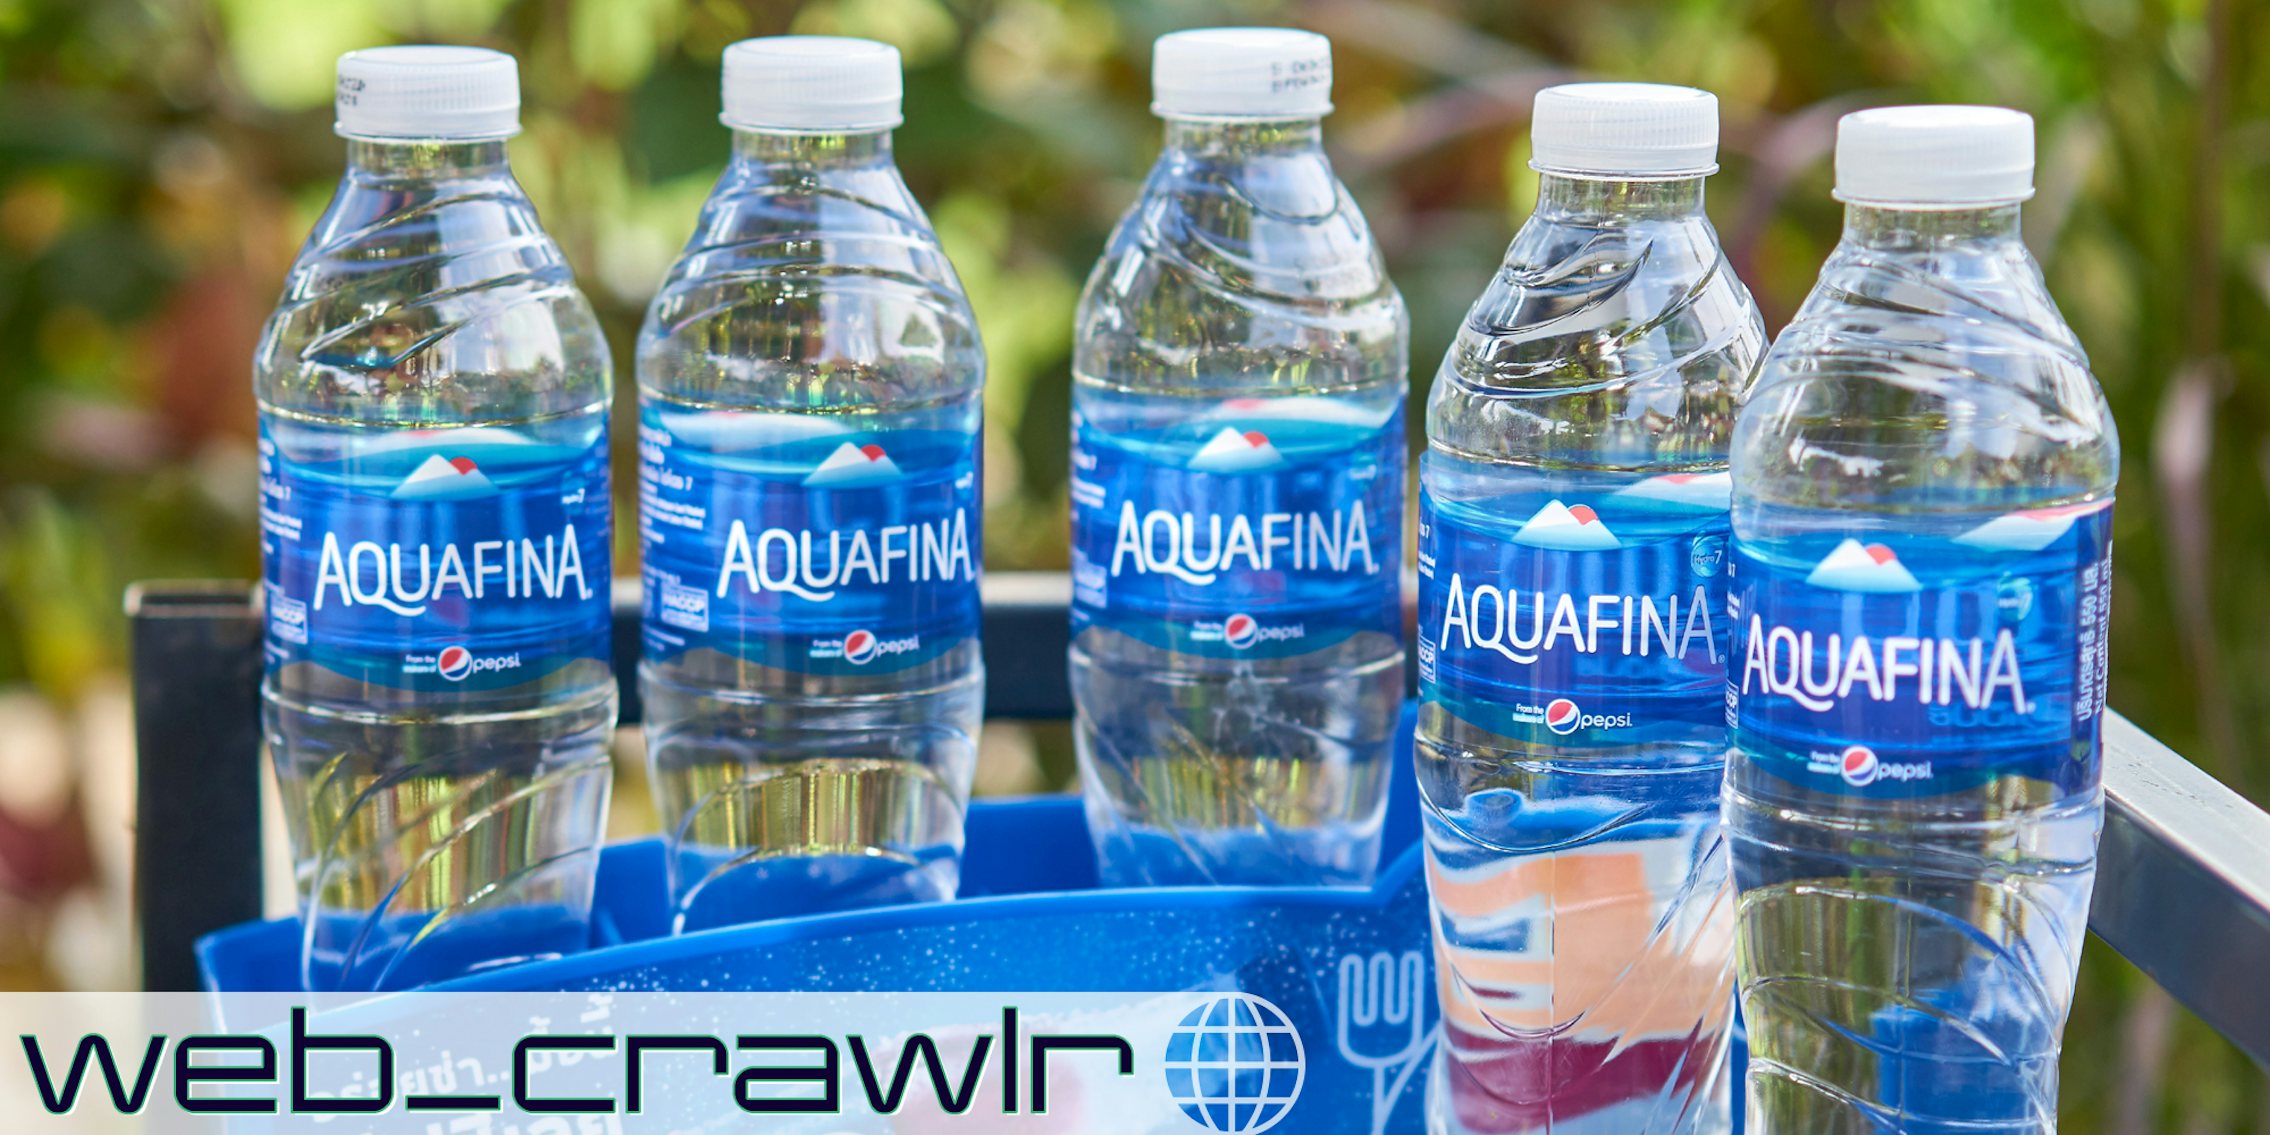 Bottles of Aquafina. The Daily Dot newsletter web_crawlr logo is in the bottom left corner.